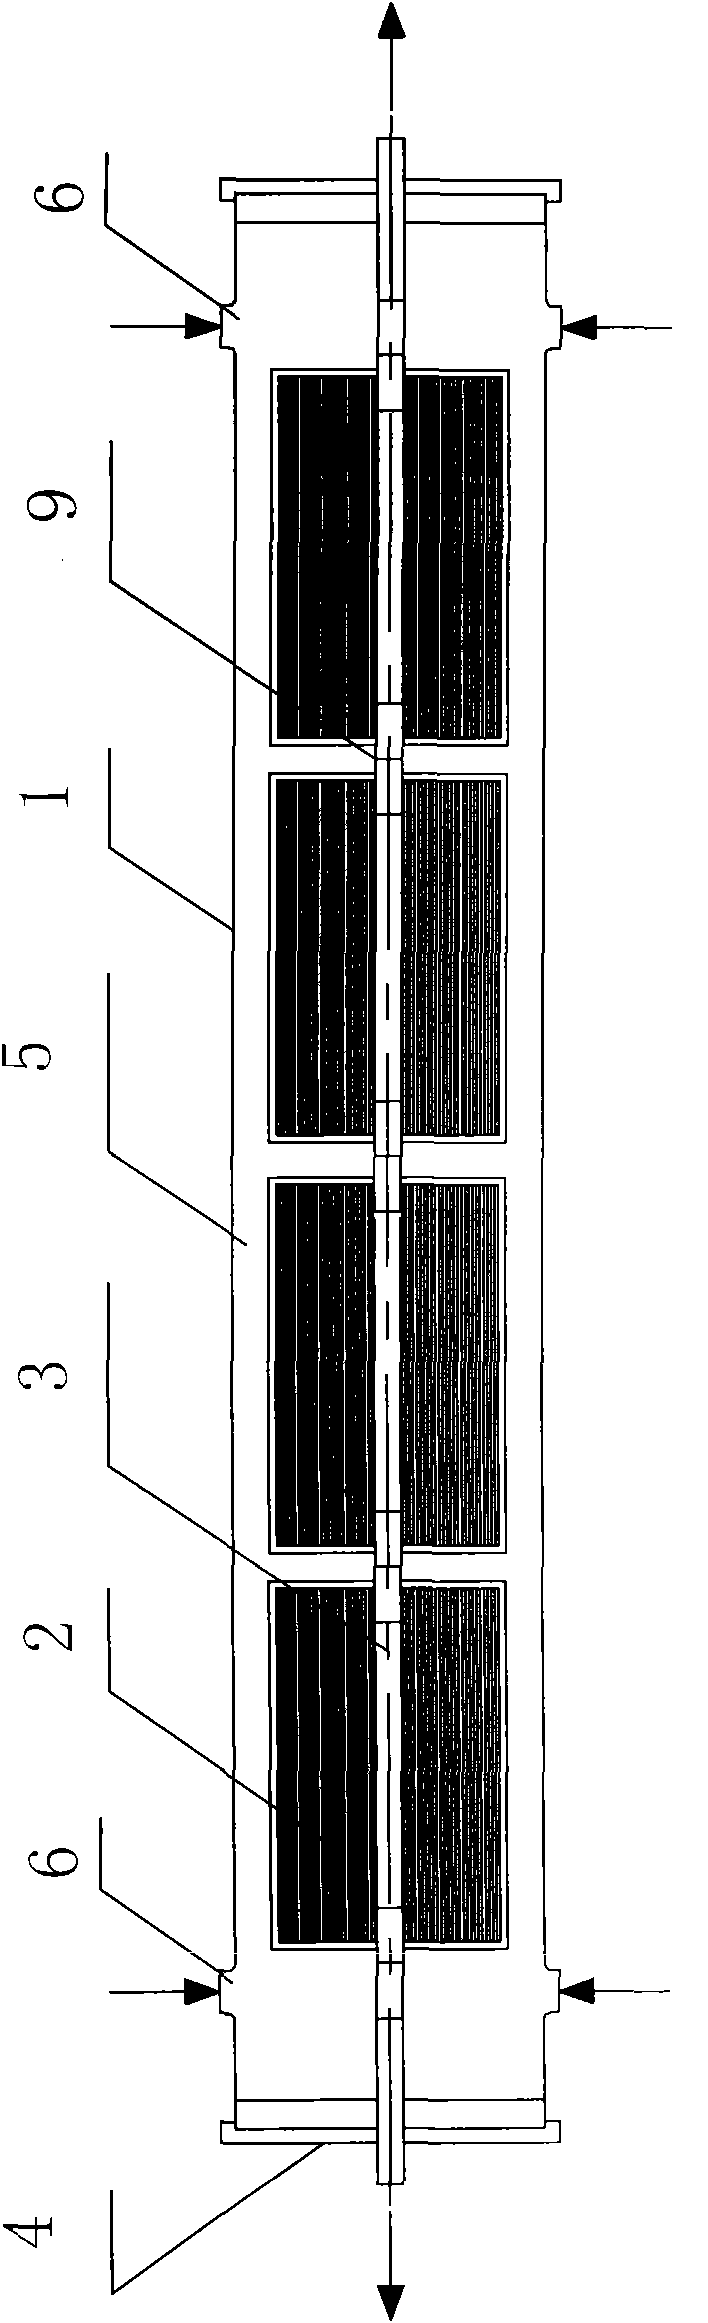 Novel membrane filtering system